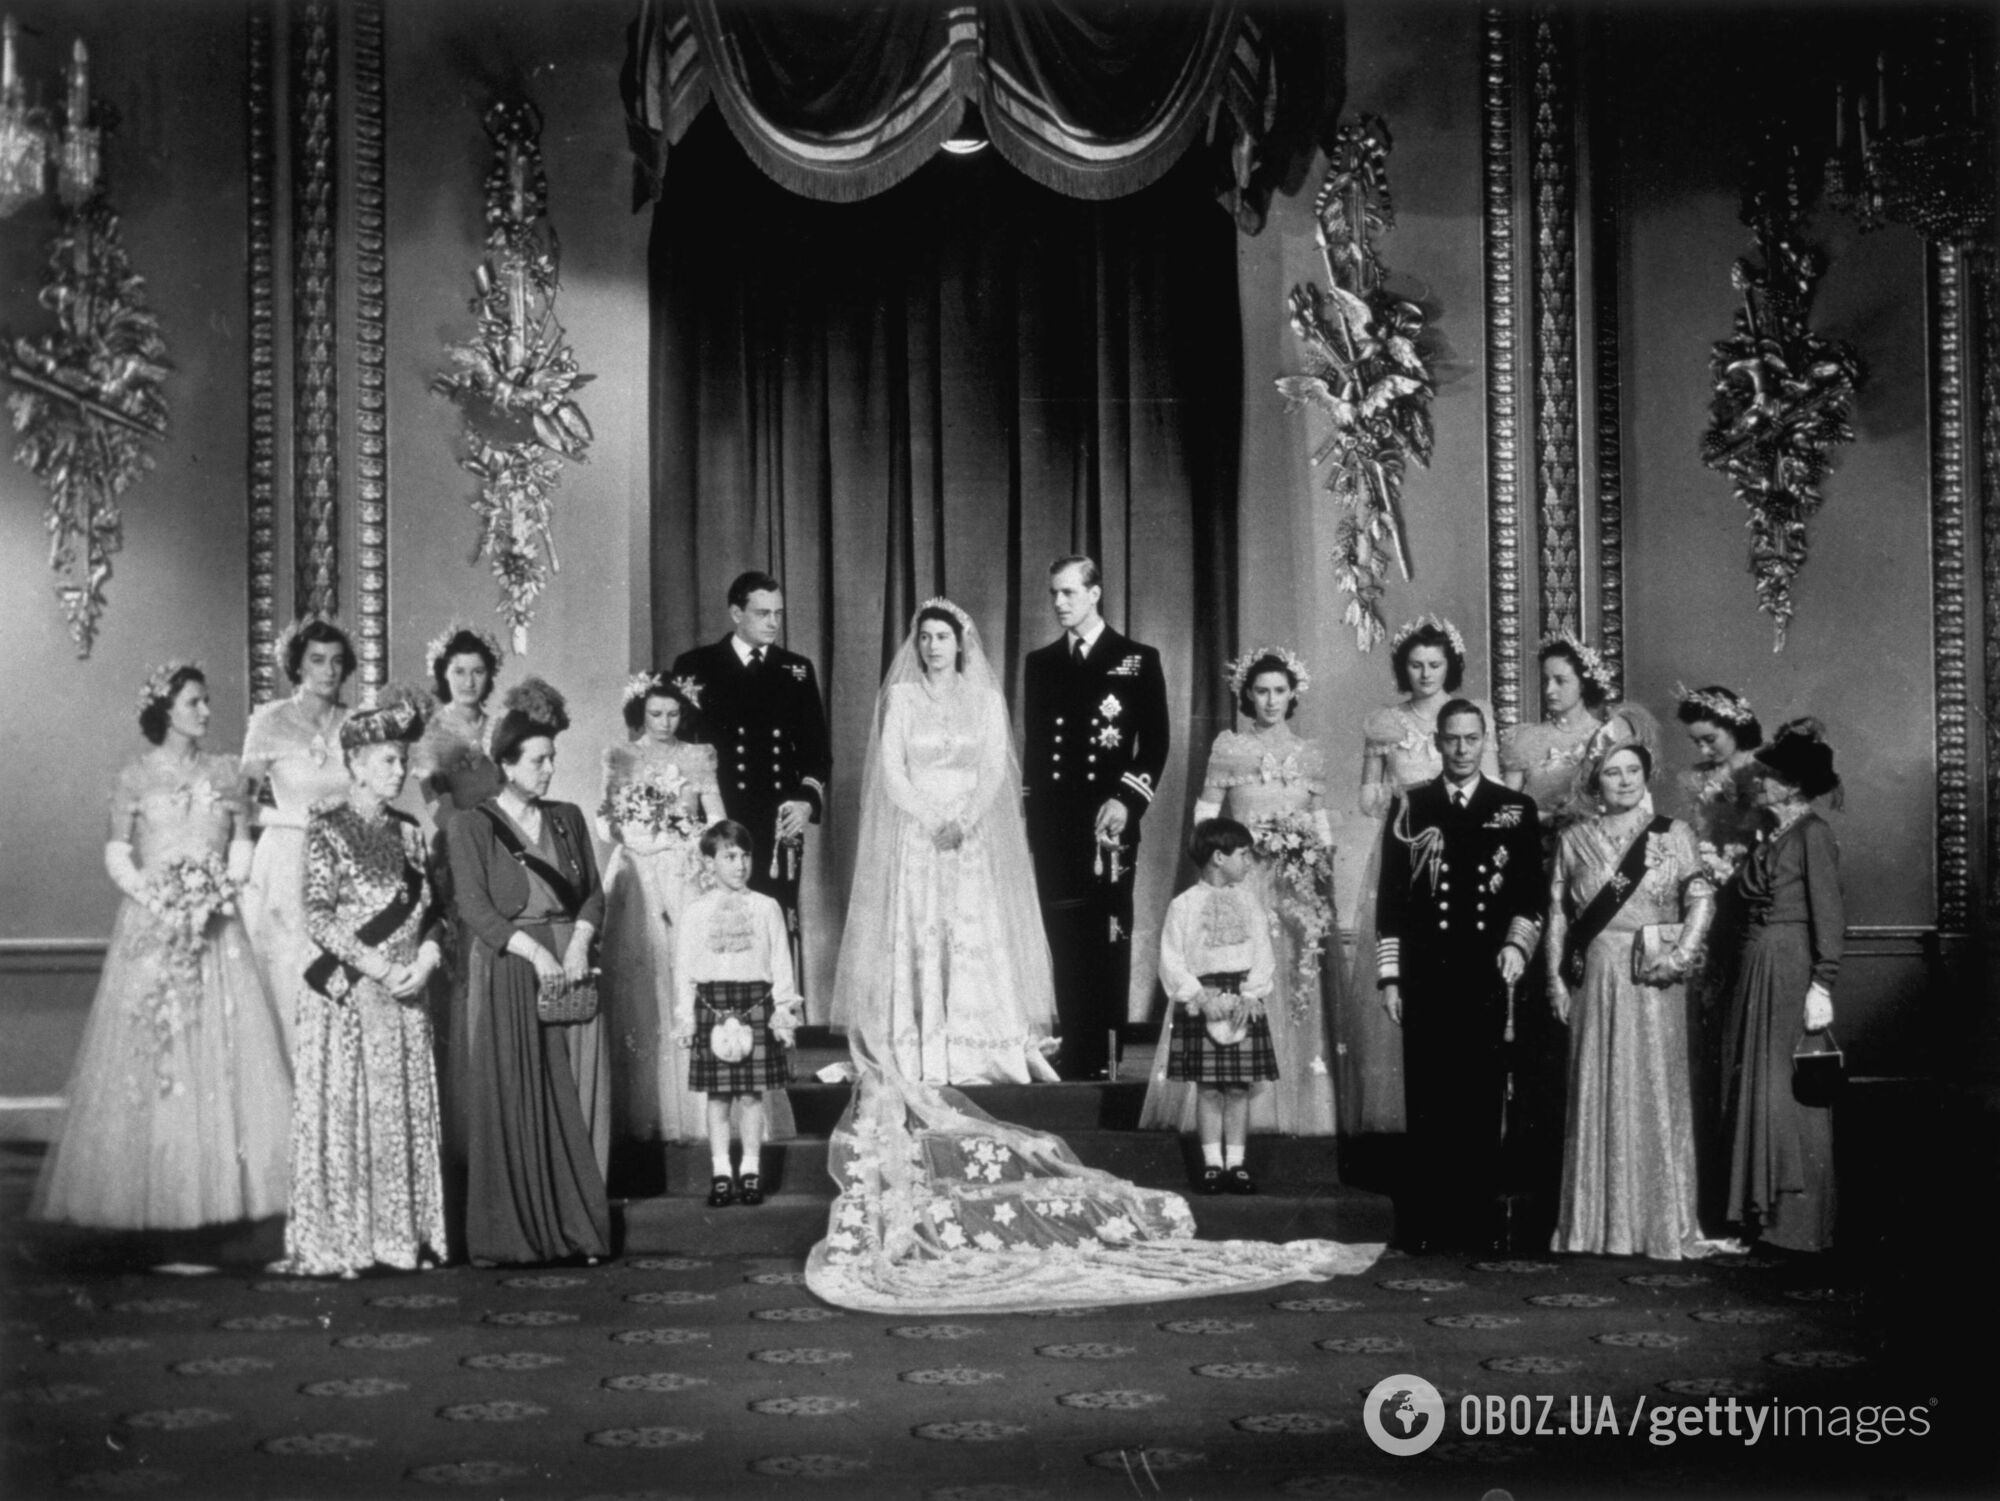 Архівний кадр із весілля Єлизавети II, де вона без букета